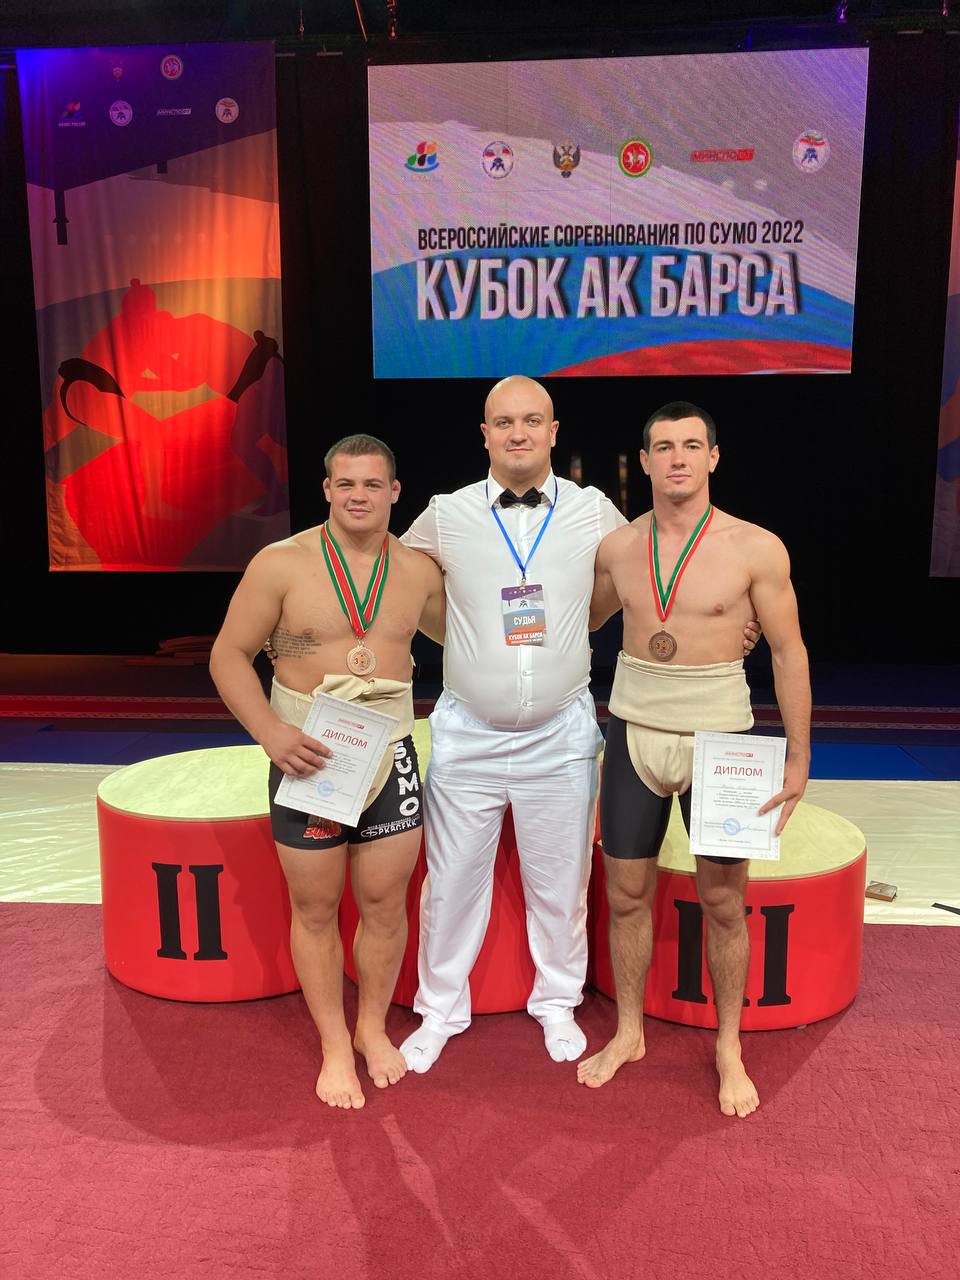 Всероссийские соревнования по сумо